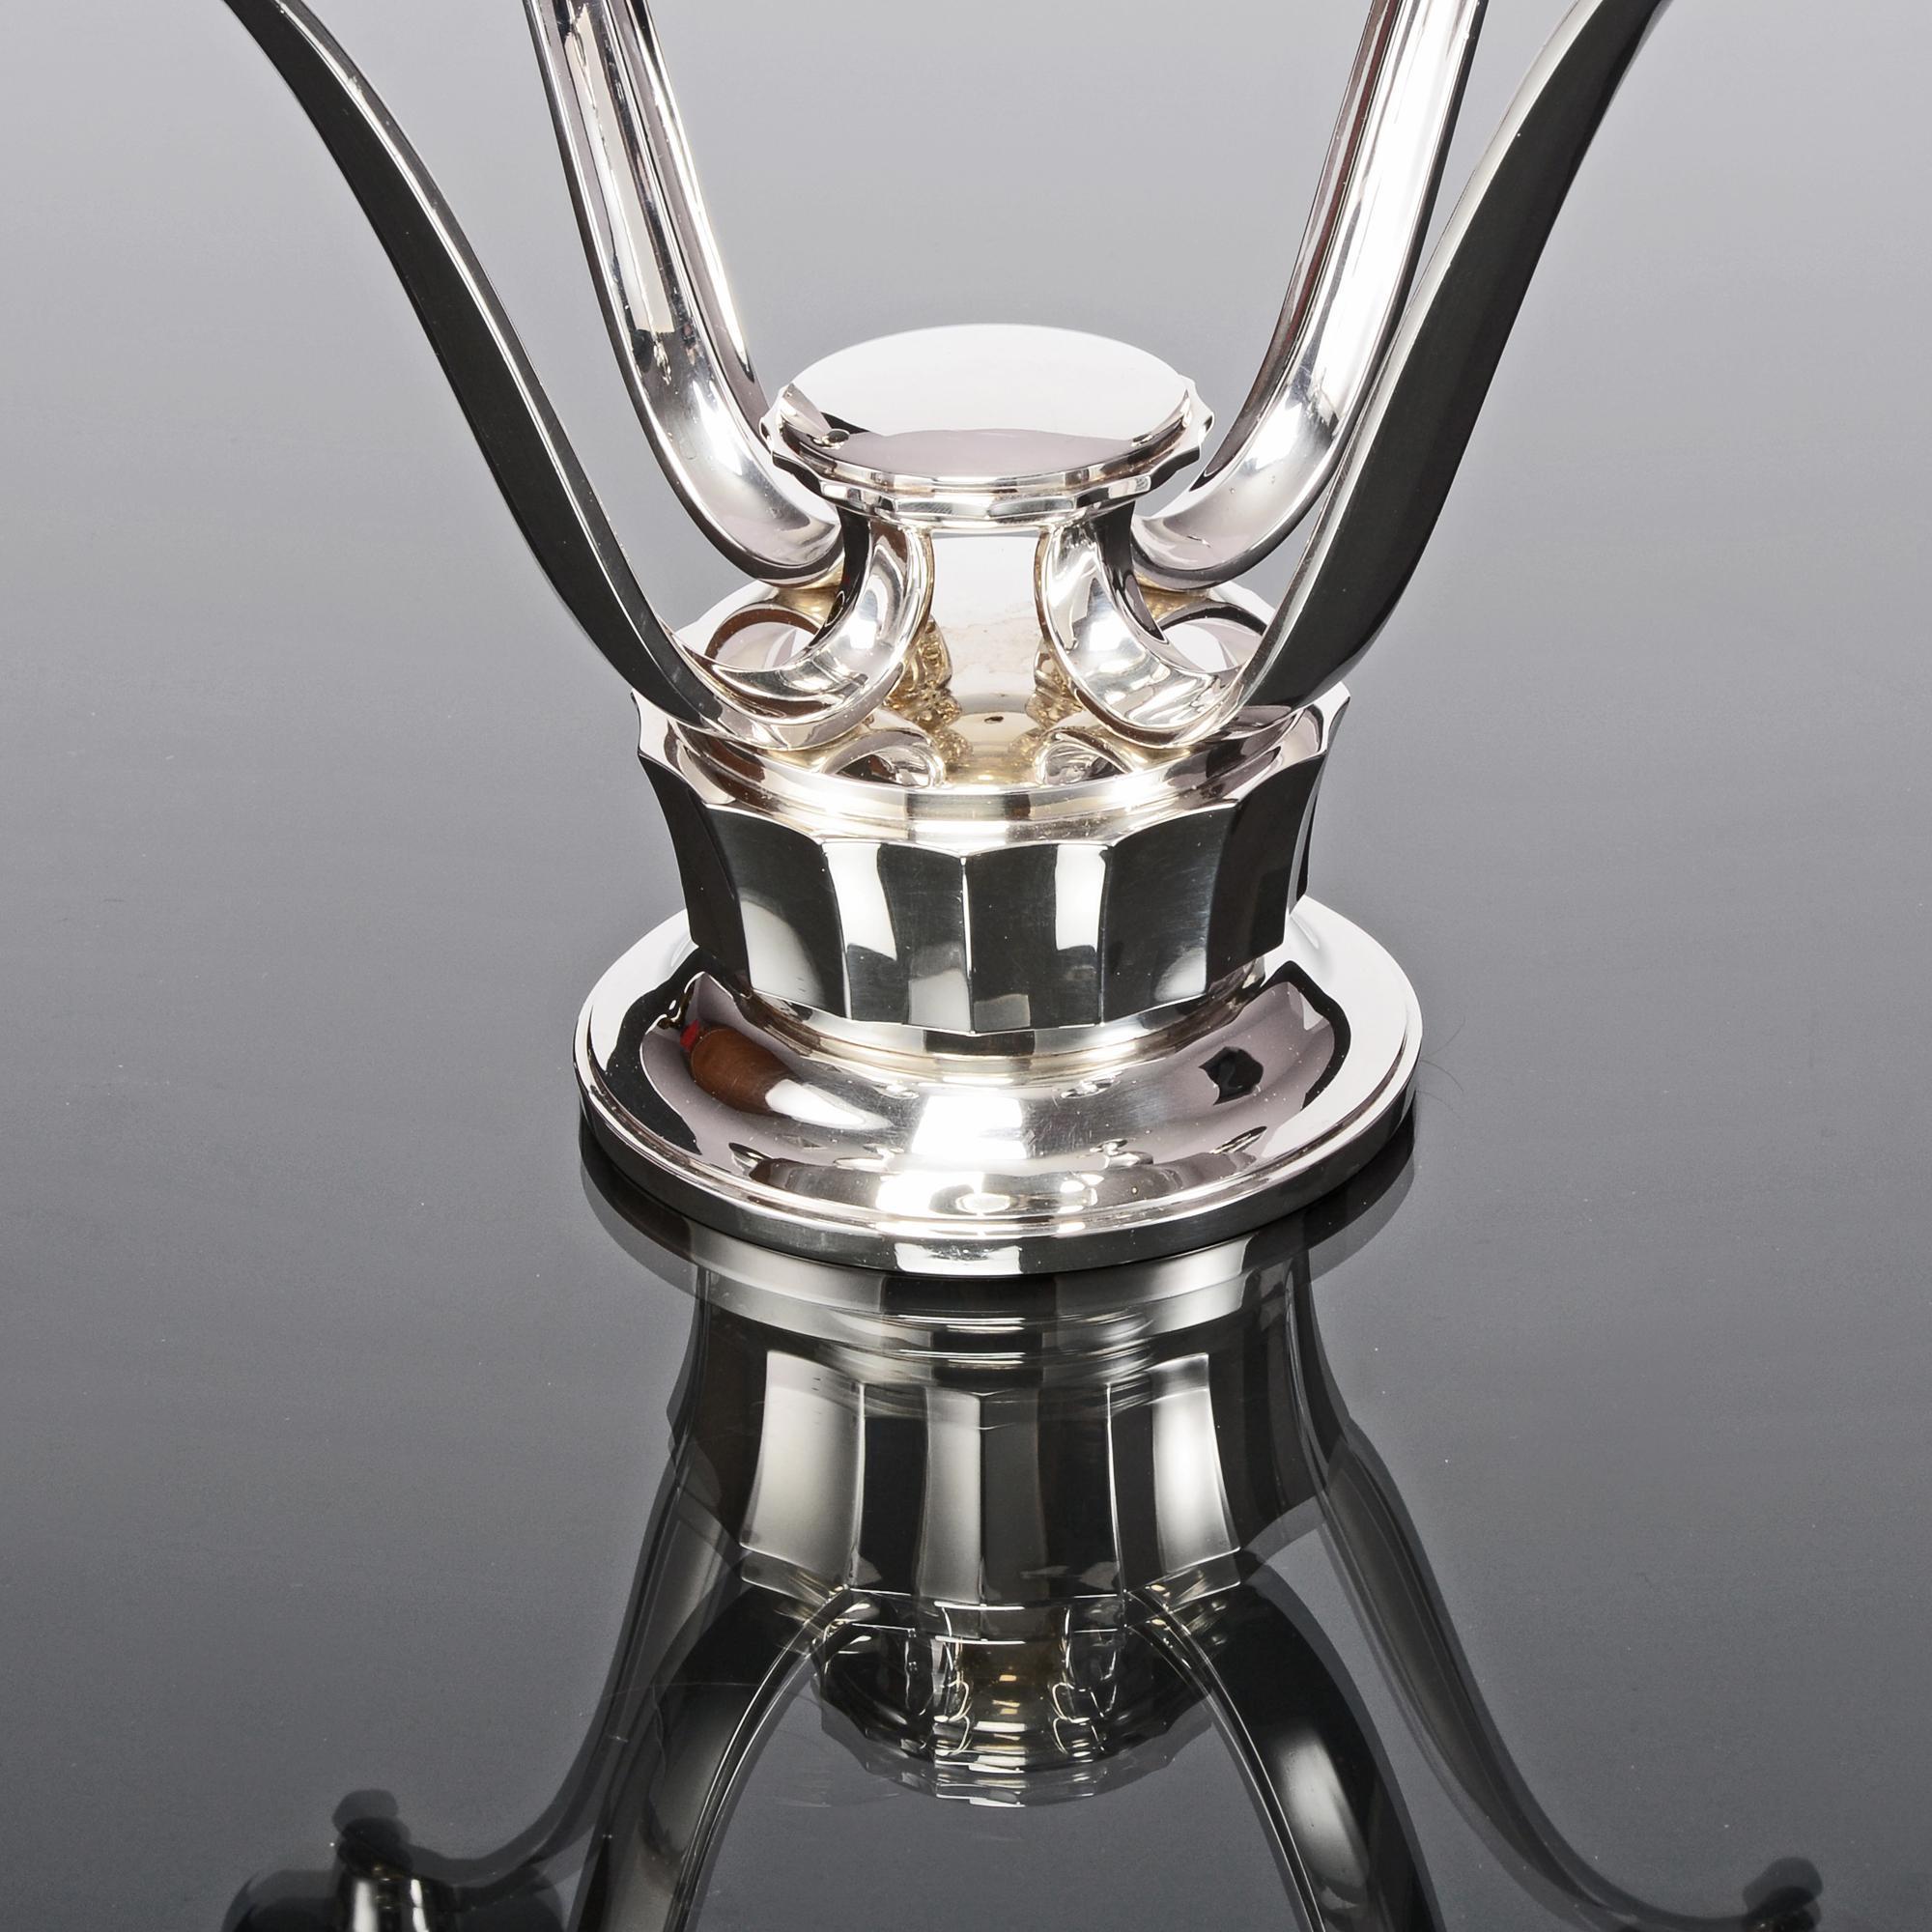 Élégant candélabre moderne en argent fabriqué en 1960 par Asprey & Co, joailliers de la Couronne. La base ronde lambrissée supporte quatre bras élégamment courbés, chacun surmonté d'un bougeoir et d'une lèchefrite en argent. Il s'agit d'une pièce